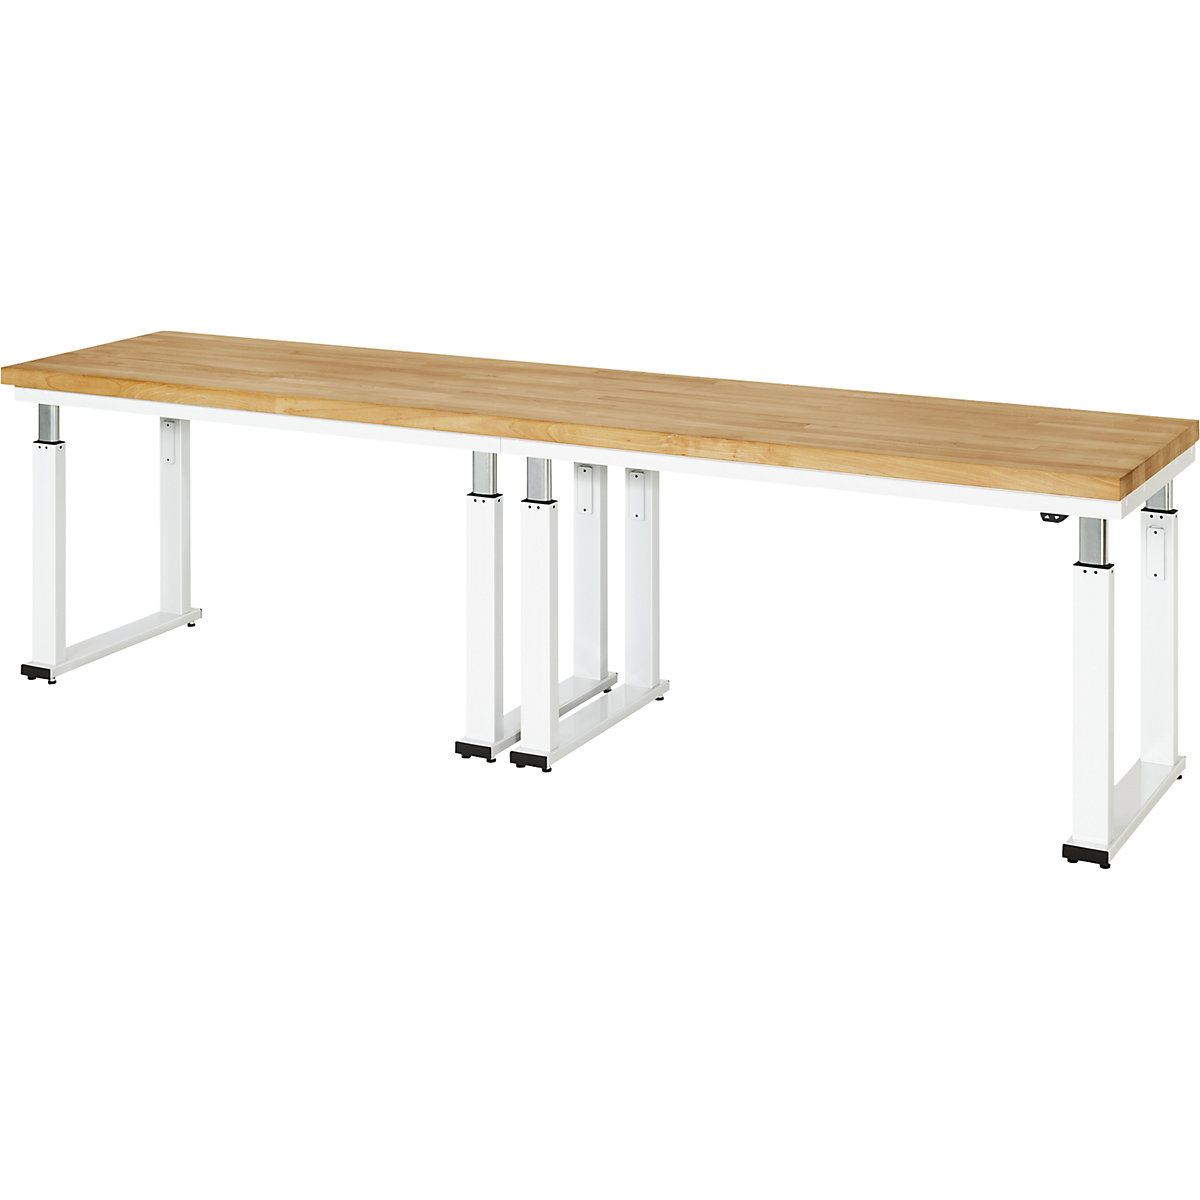 Psací stůl s elektrickým přestavováním výšky – RAU, bukový masiv, nosnost 600 kg, š x h 3000 x 700 mm-16